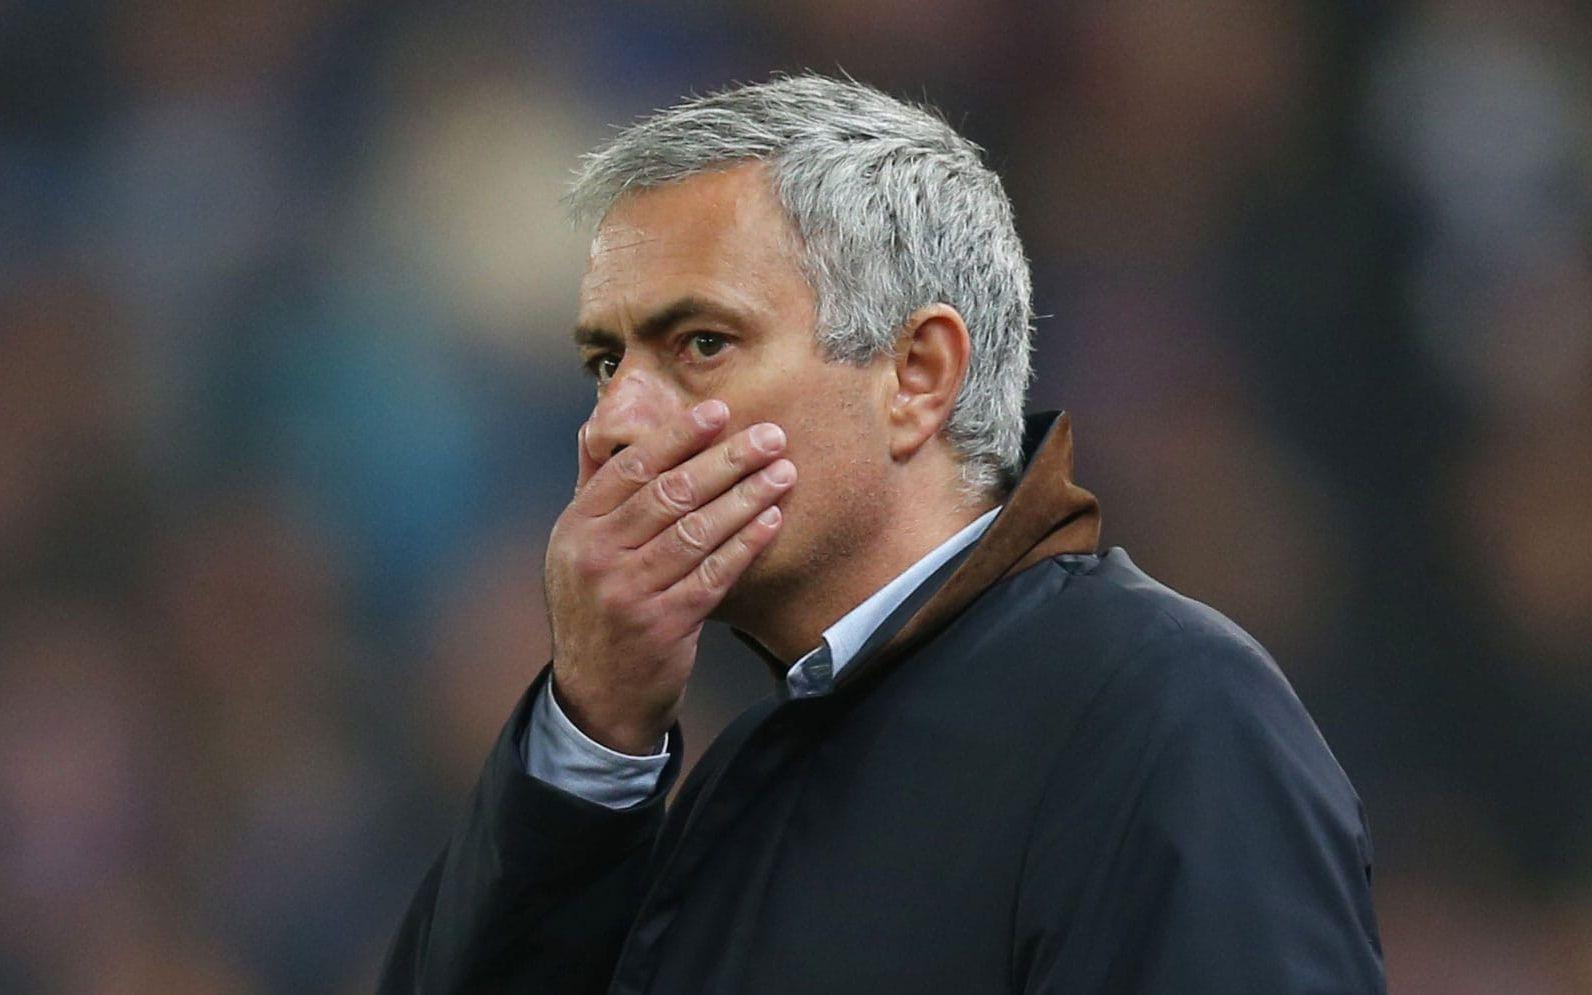 José Mourinho vann ligan med Chelsea 2014-2015, den här säsongen gick det inte lika bra och portugisen fick lämna jobbet. Foto: Bildbyrån